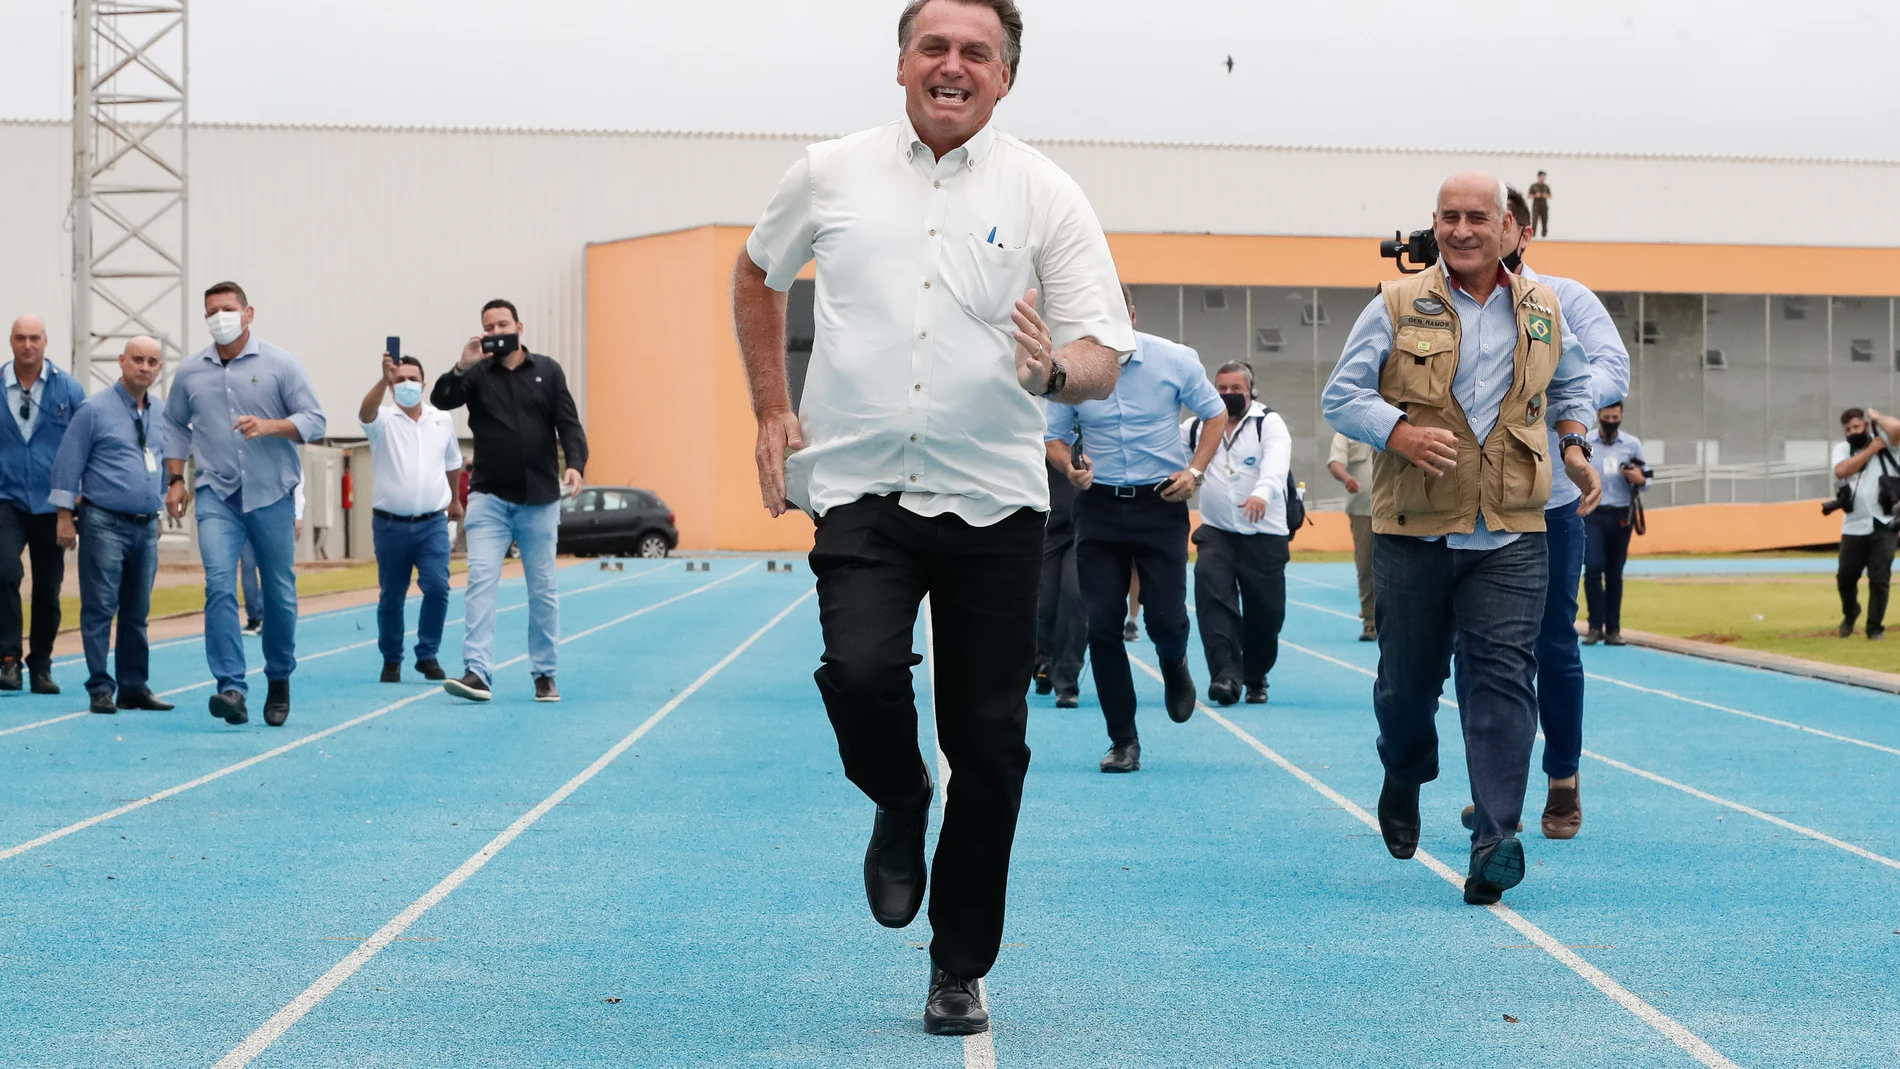 El presidente brasileño, Jair Bolsonaro, participa en una carrera simbólica con otros funcionarios durante su visita al Centro Nacional de Atletismo